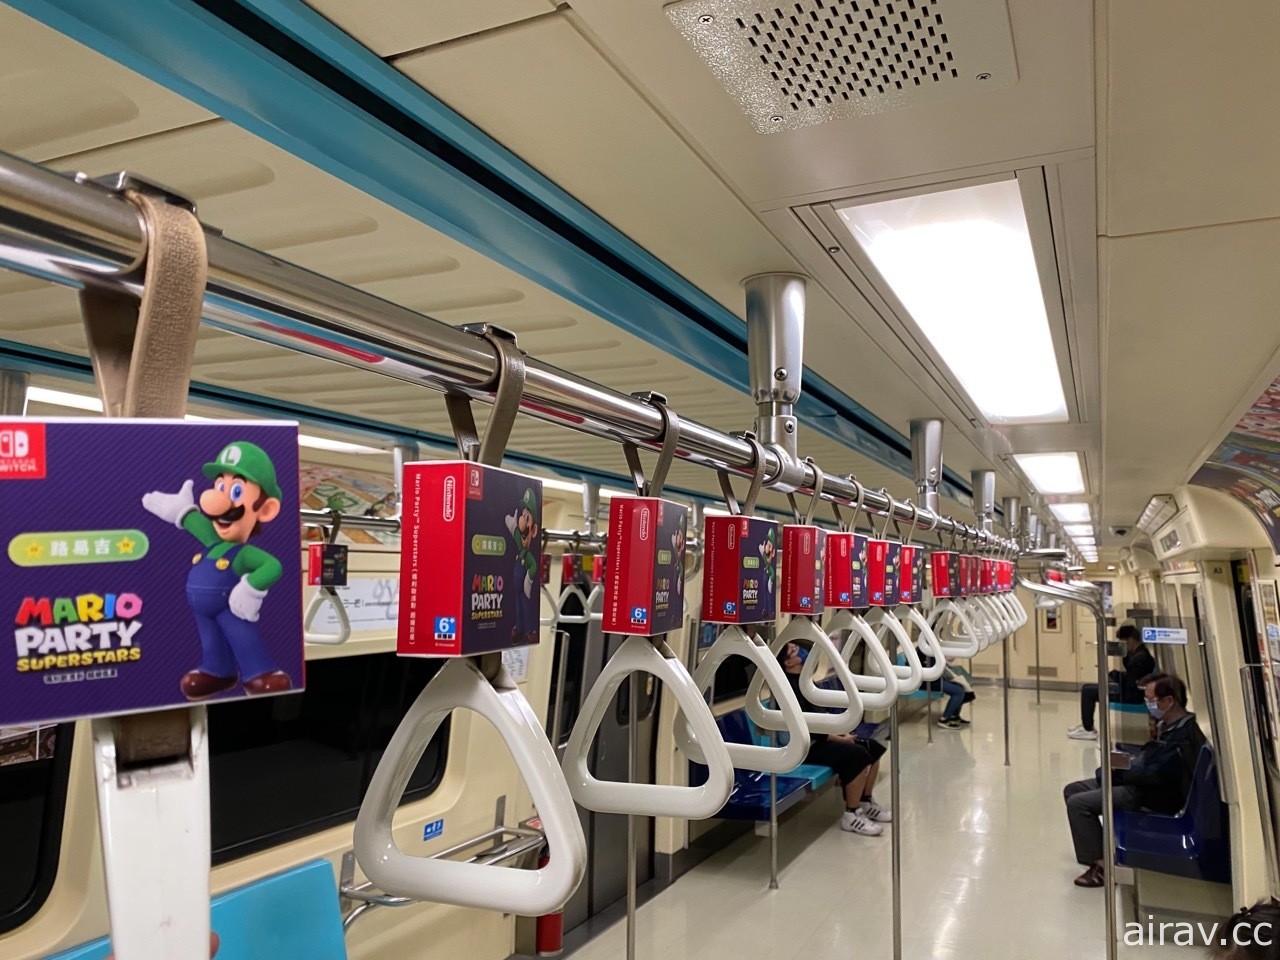 《瑪利歐派對 超級巨星》主題捷運列車即日起於淡水信義線、松山新店線開始運行